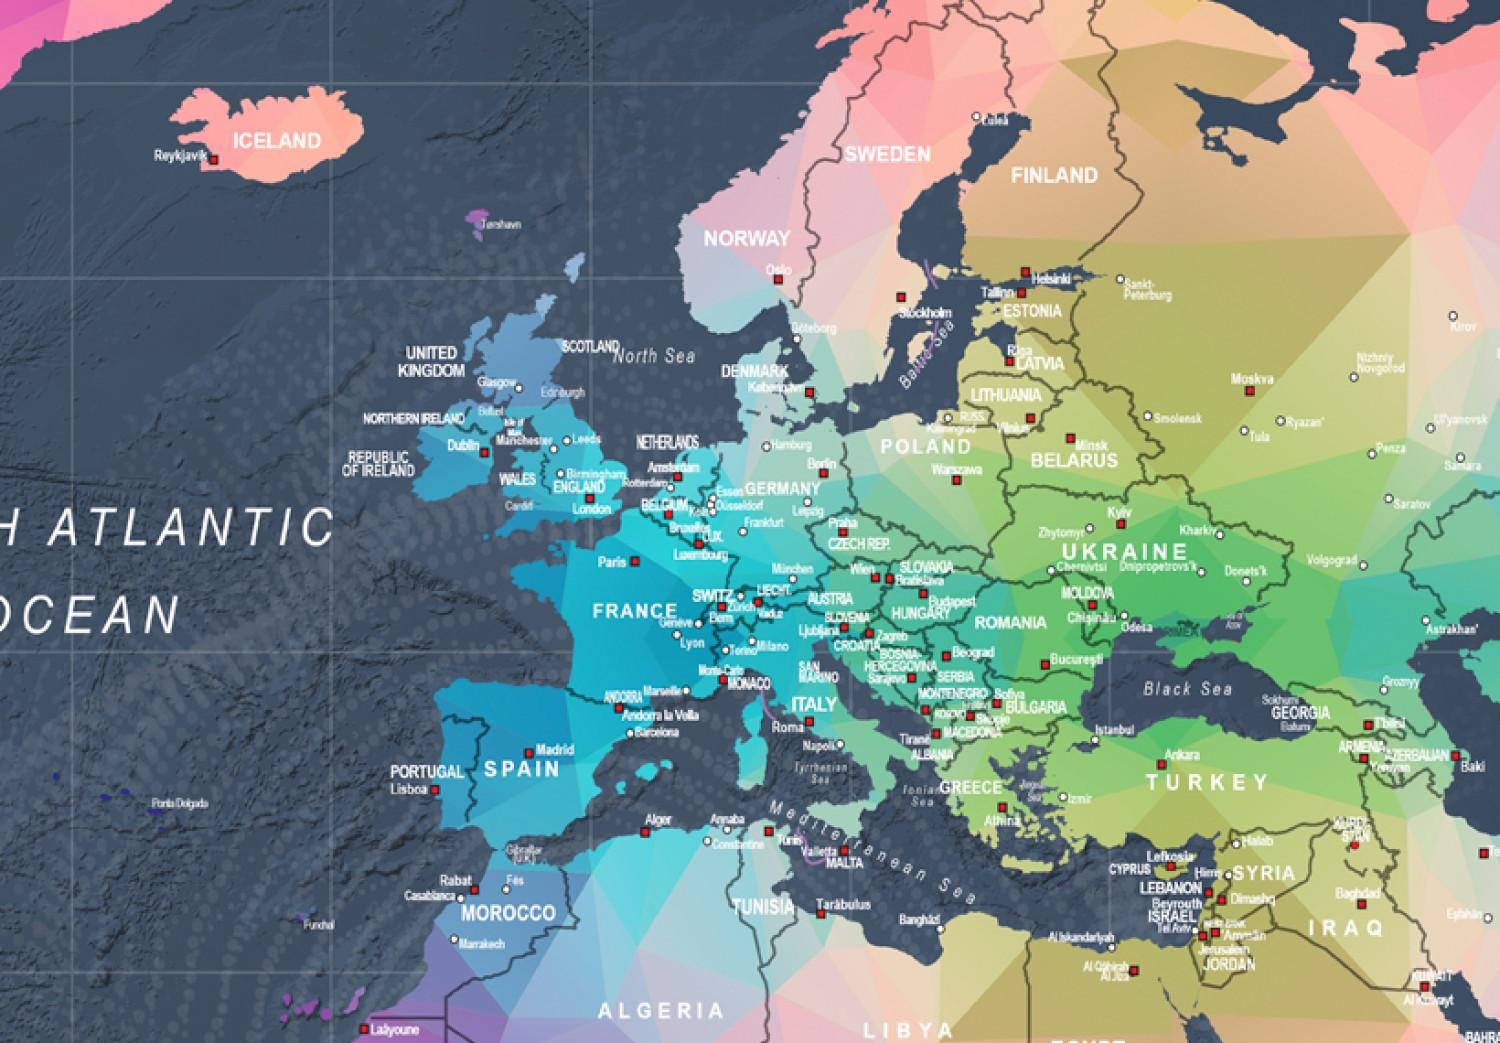 Cuadro moderno Continentes geométricos (1 parte) - mapa mundial colorido y letras